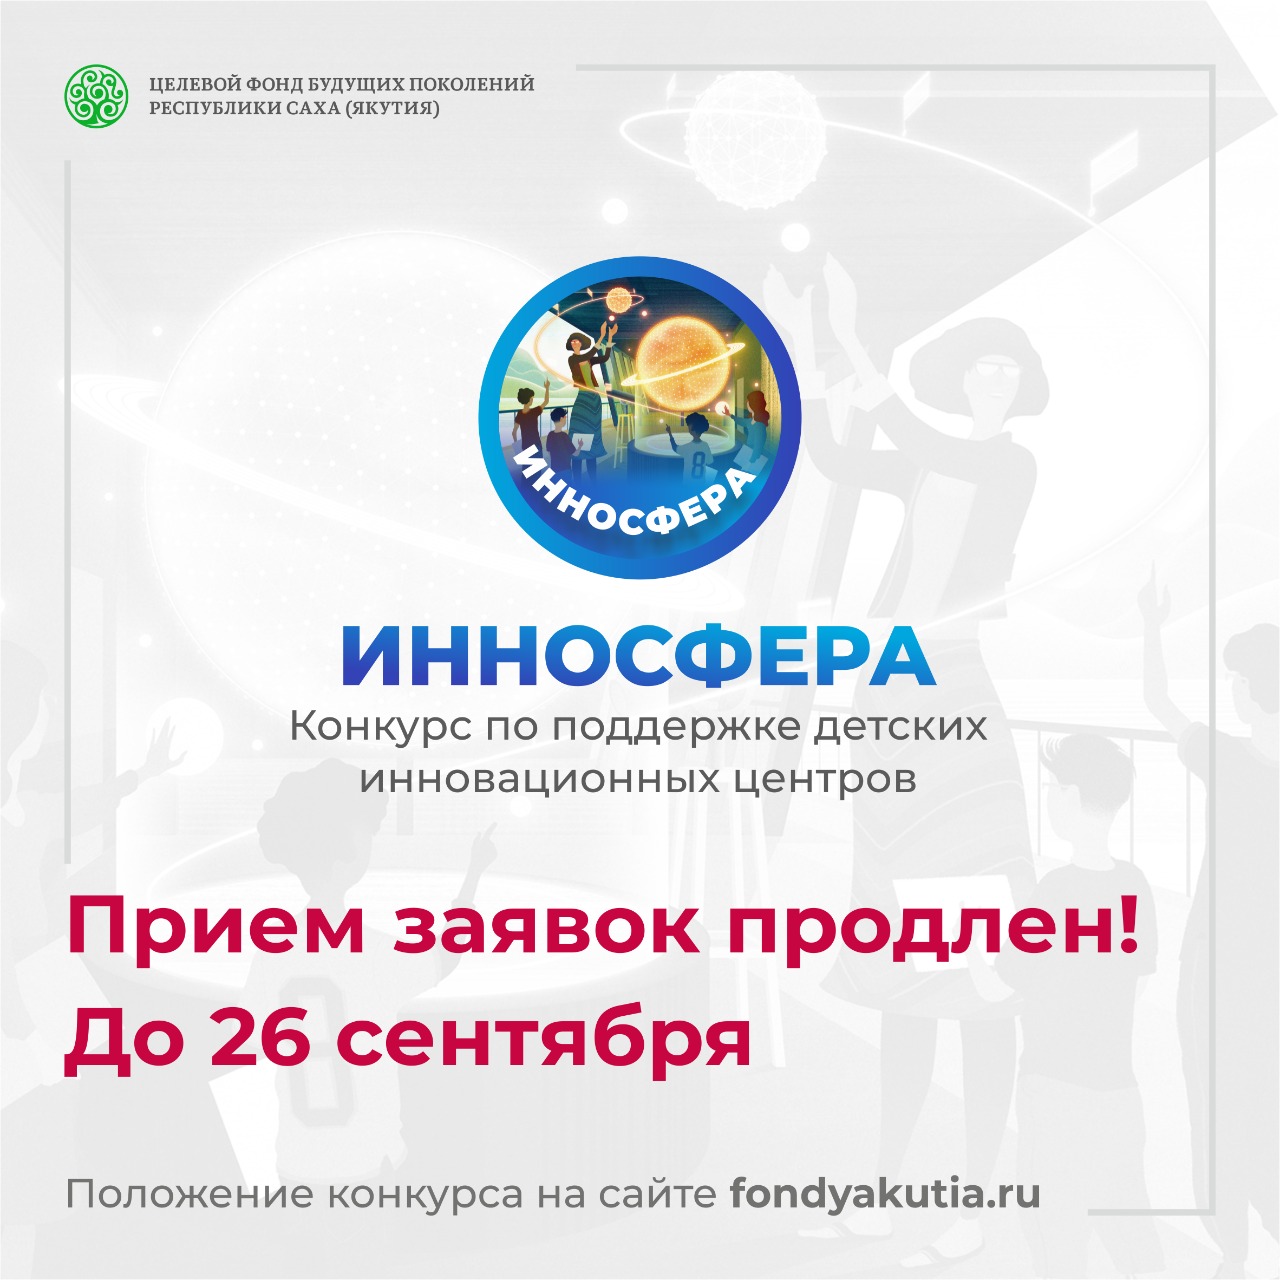 Прием заявок на конкурс ИННОСФЕРА в Якутии продлили по 26 сентября